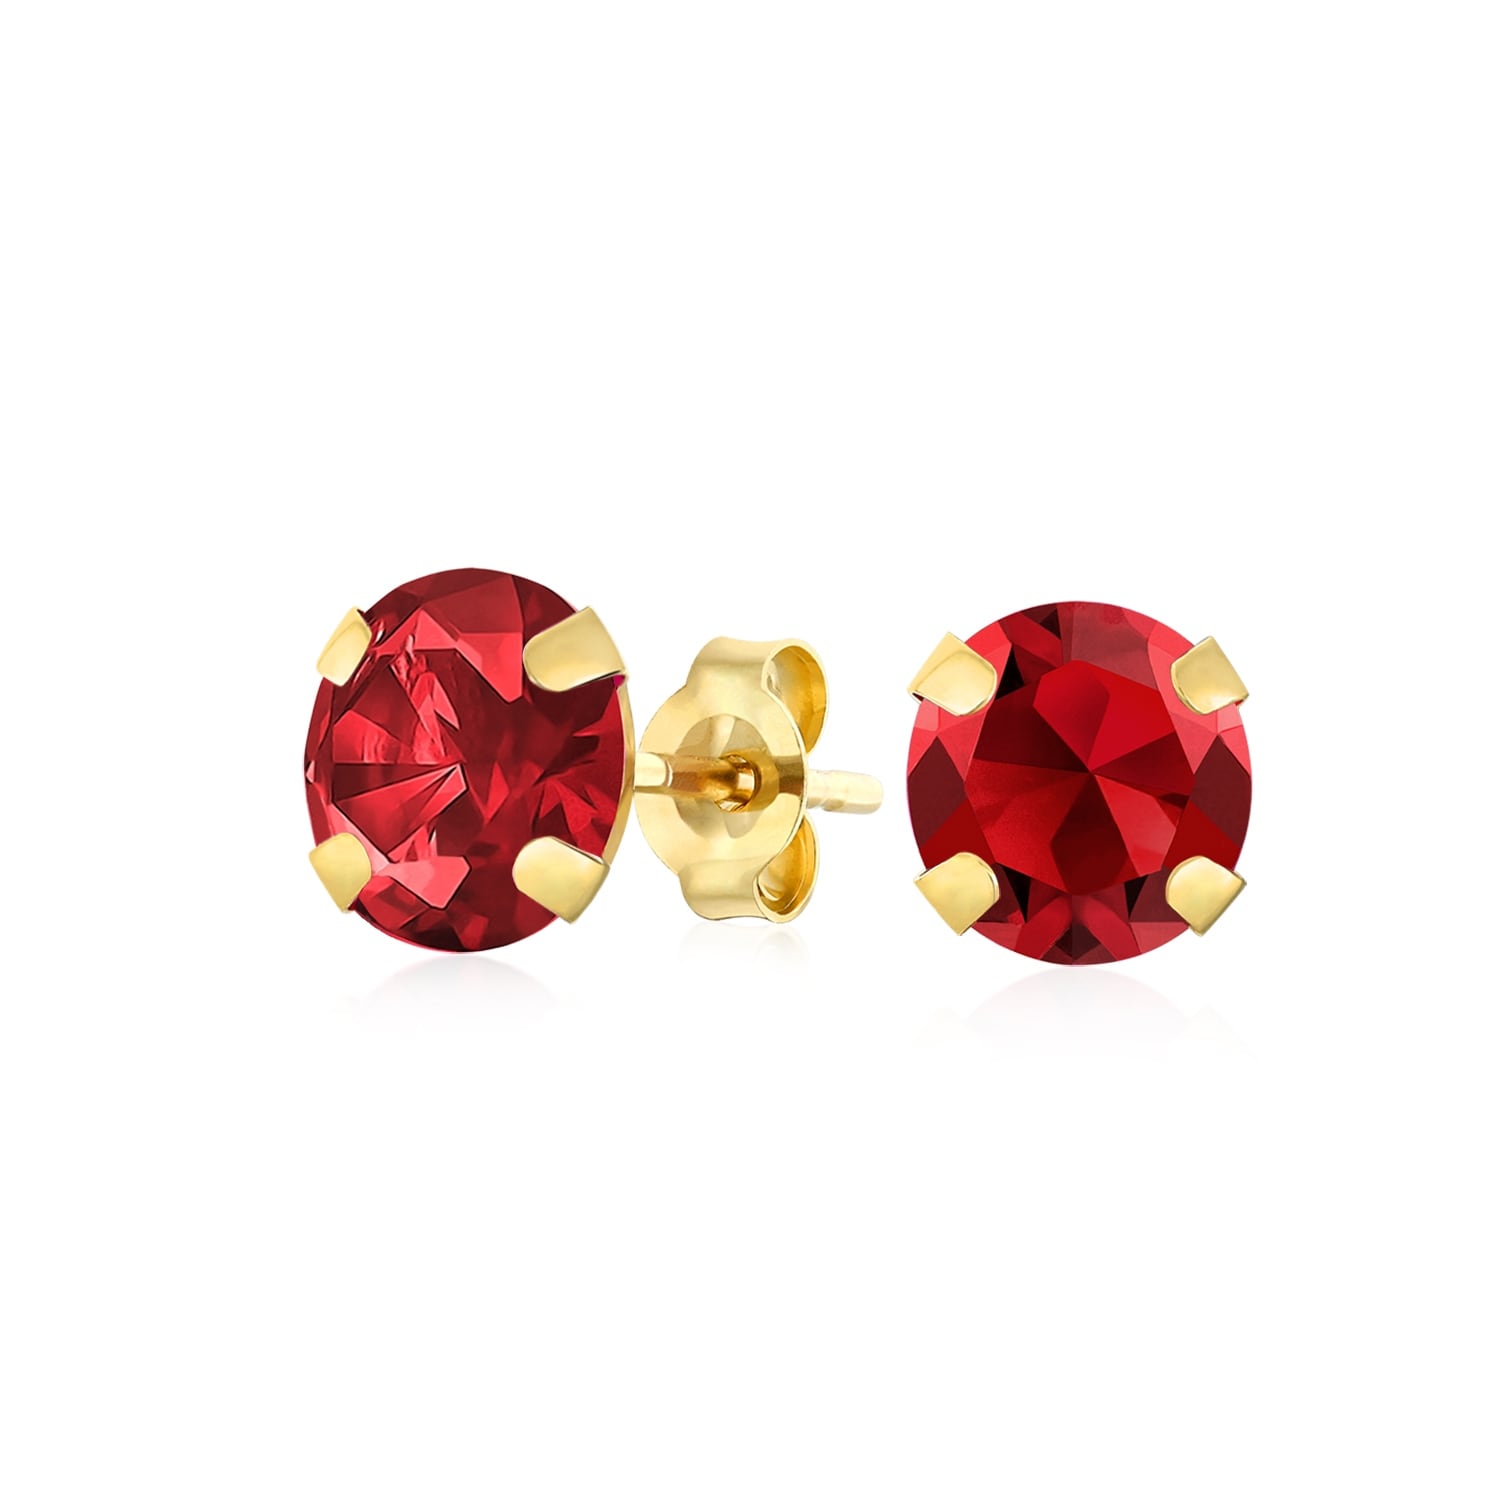 Gold stud flower earrings 14k with garnet January birthstone flower gold earrings. solid gold stud earrings